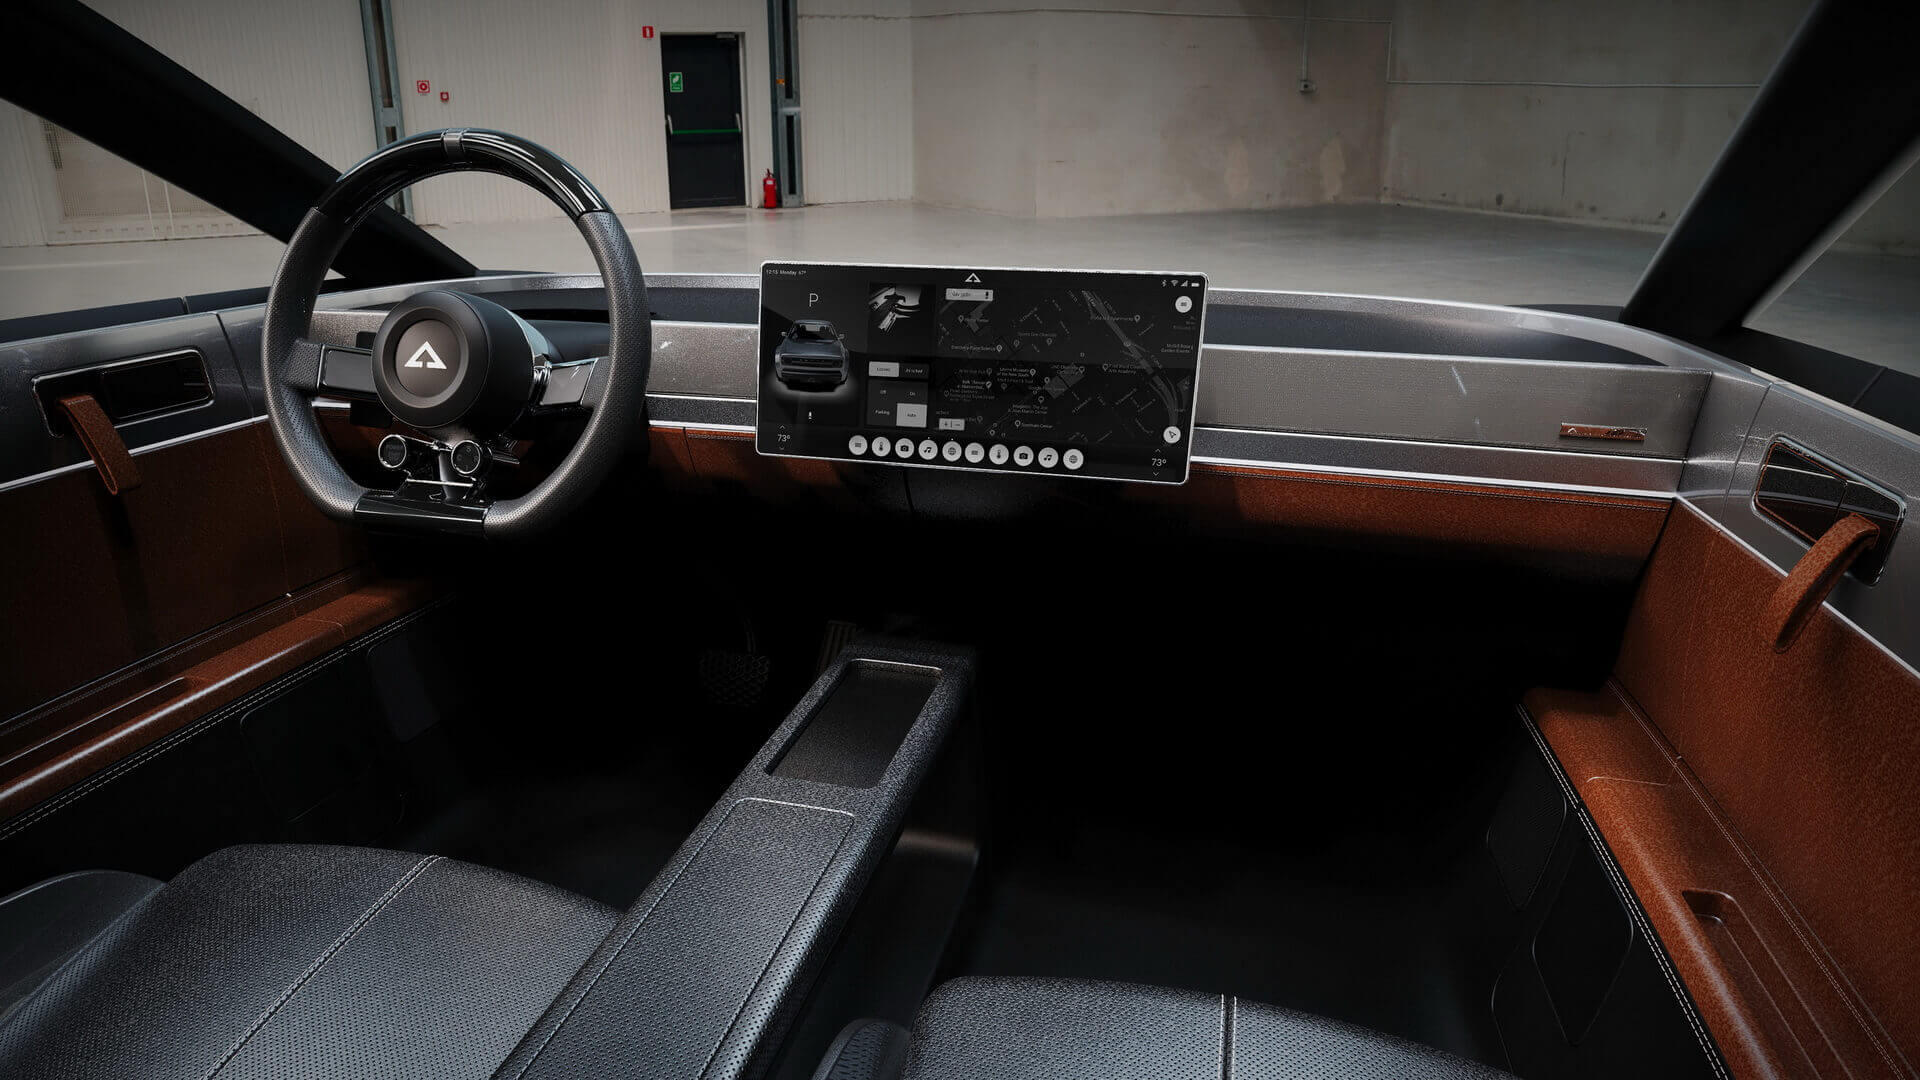 Как и в Tesla Model 3, управление функциями автомобиля осуществляется с помощью одного большого центрального экрана